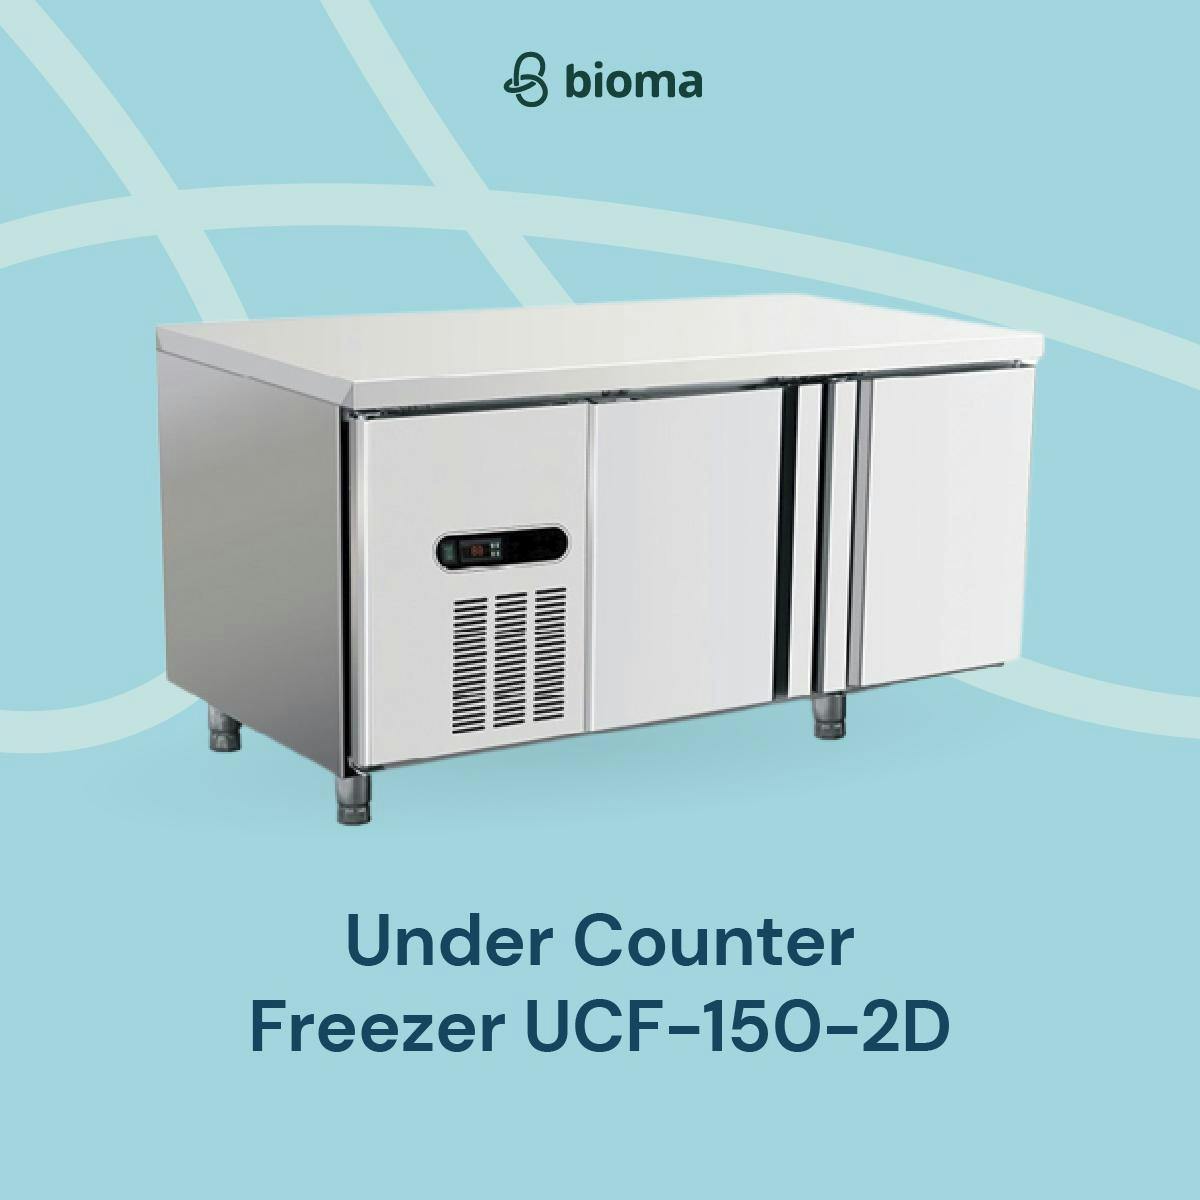 Under Counter Freezer UCF-150-2D